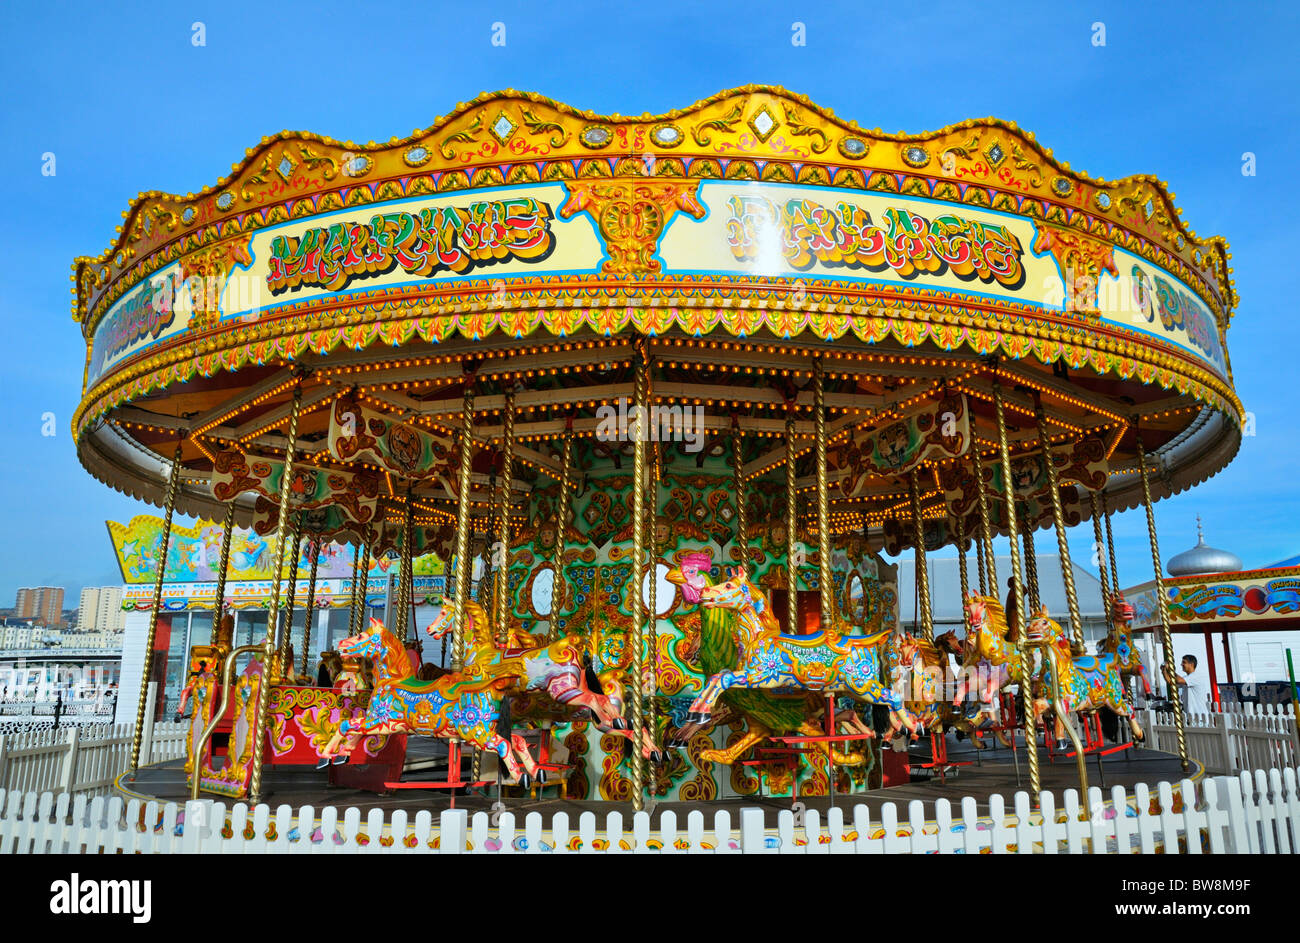 Carrusel en el Palace Pier, Brighton, East Sussex, Reino Unido Foto de stock